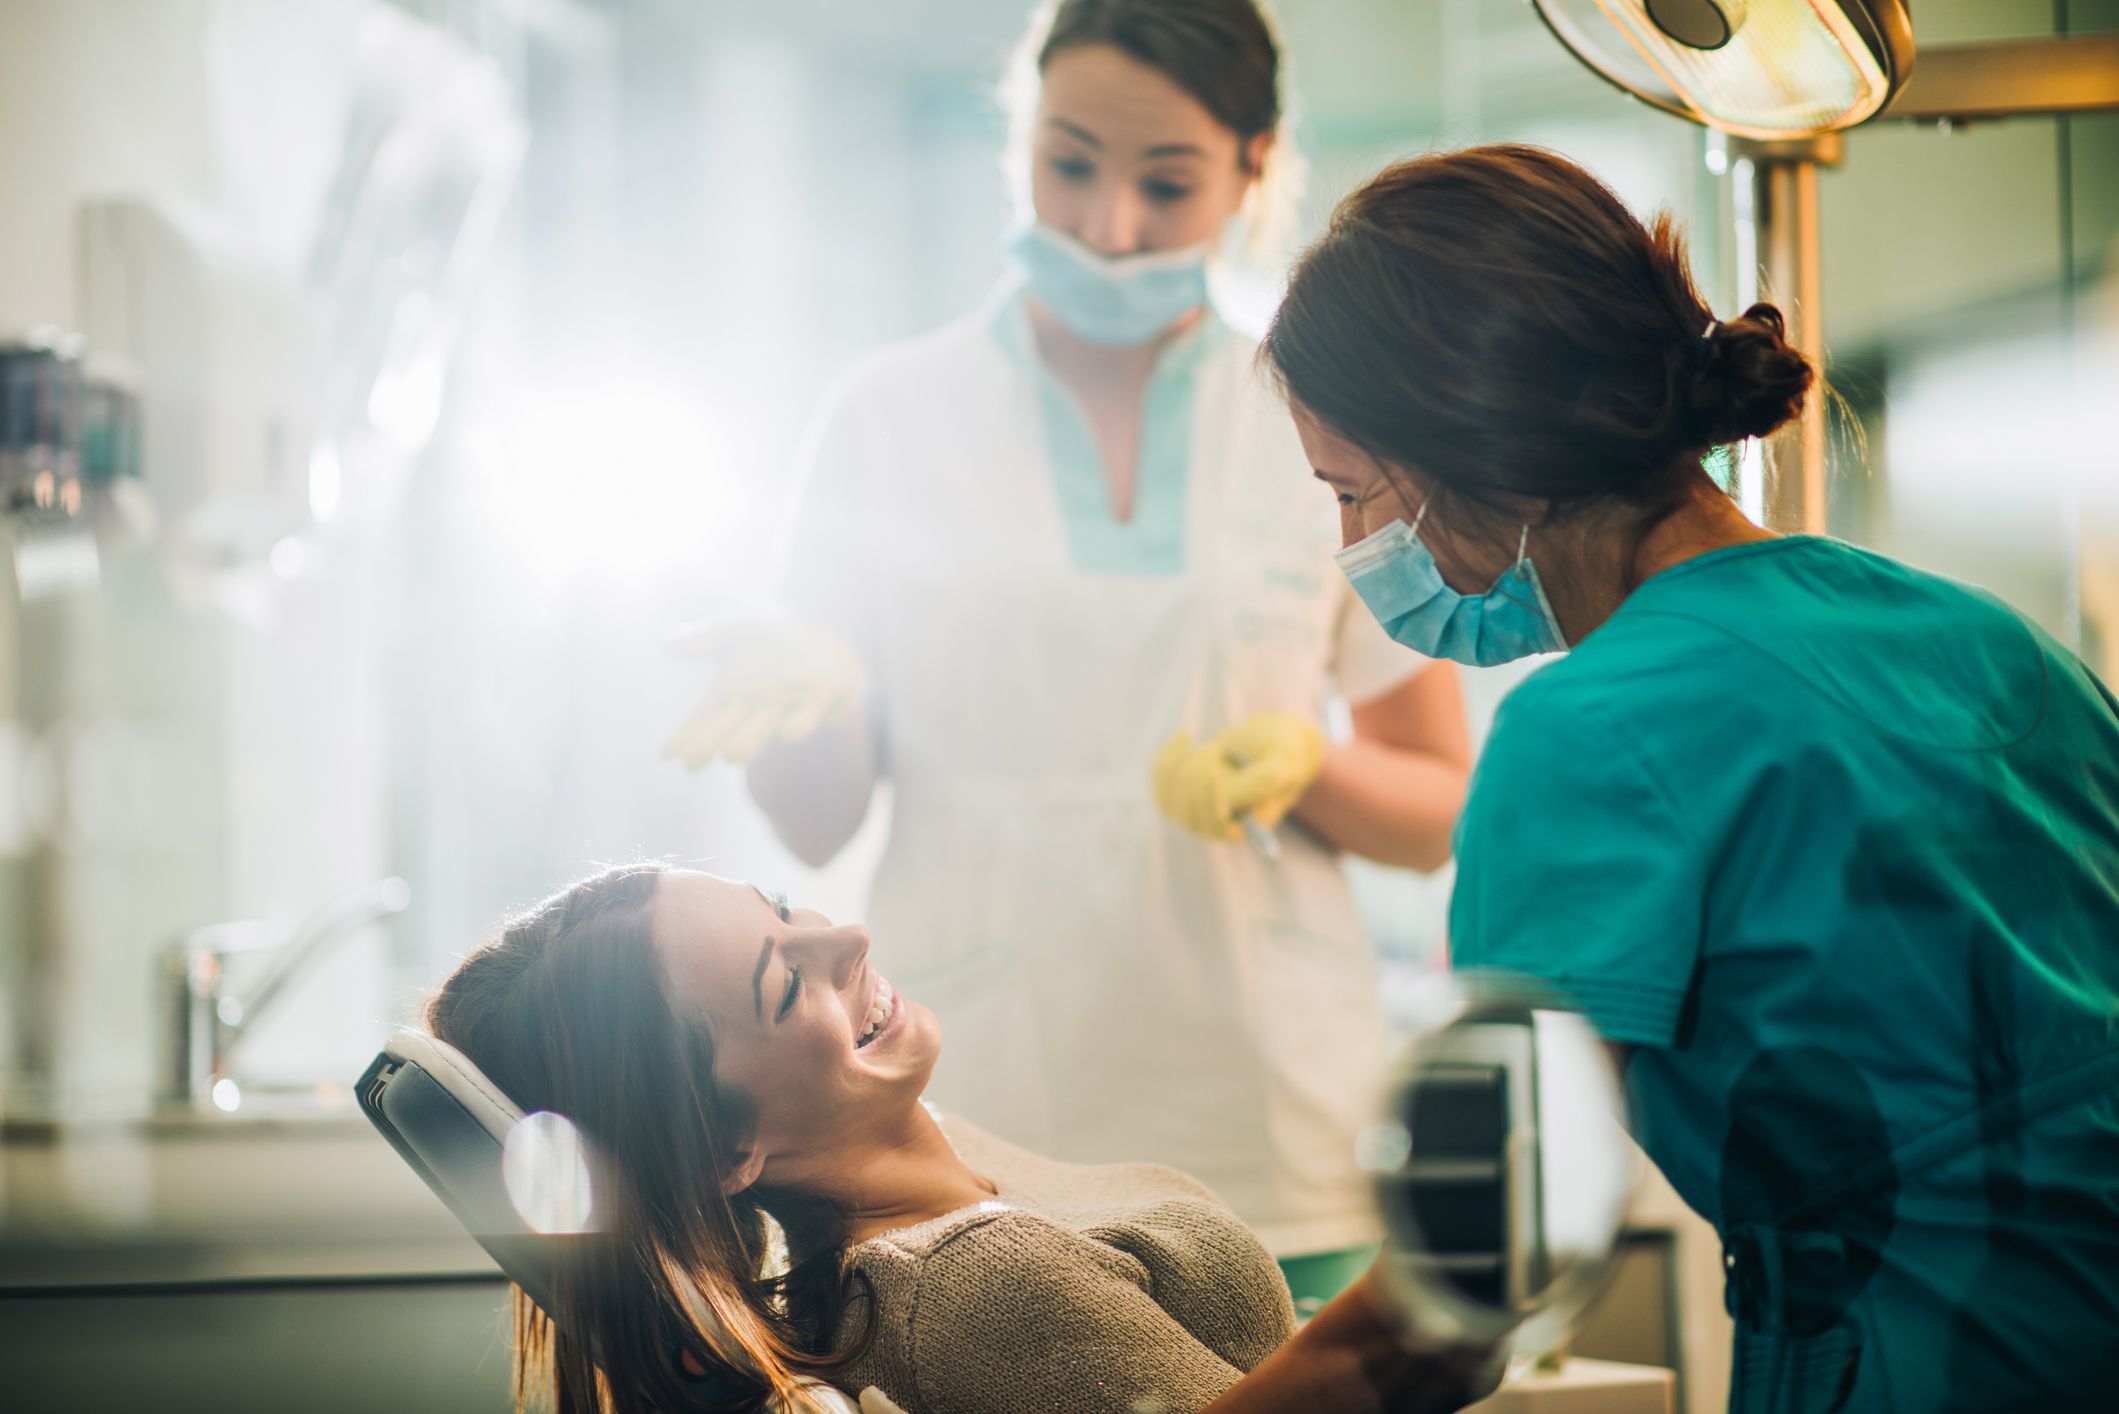 Raspagem periodontal: entenda o que é e quais as vantagens